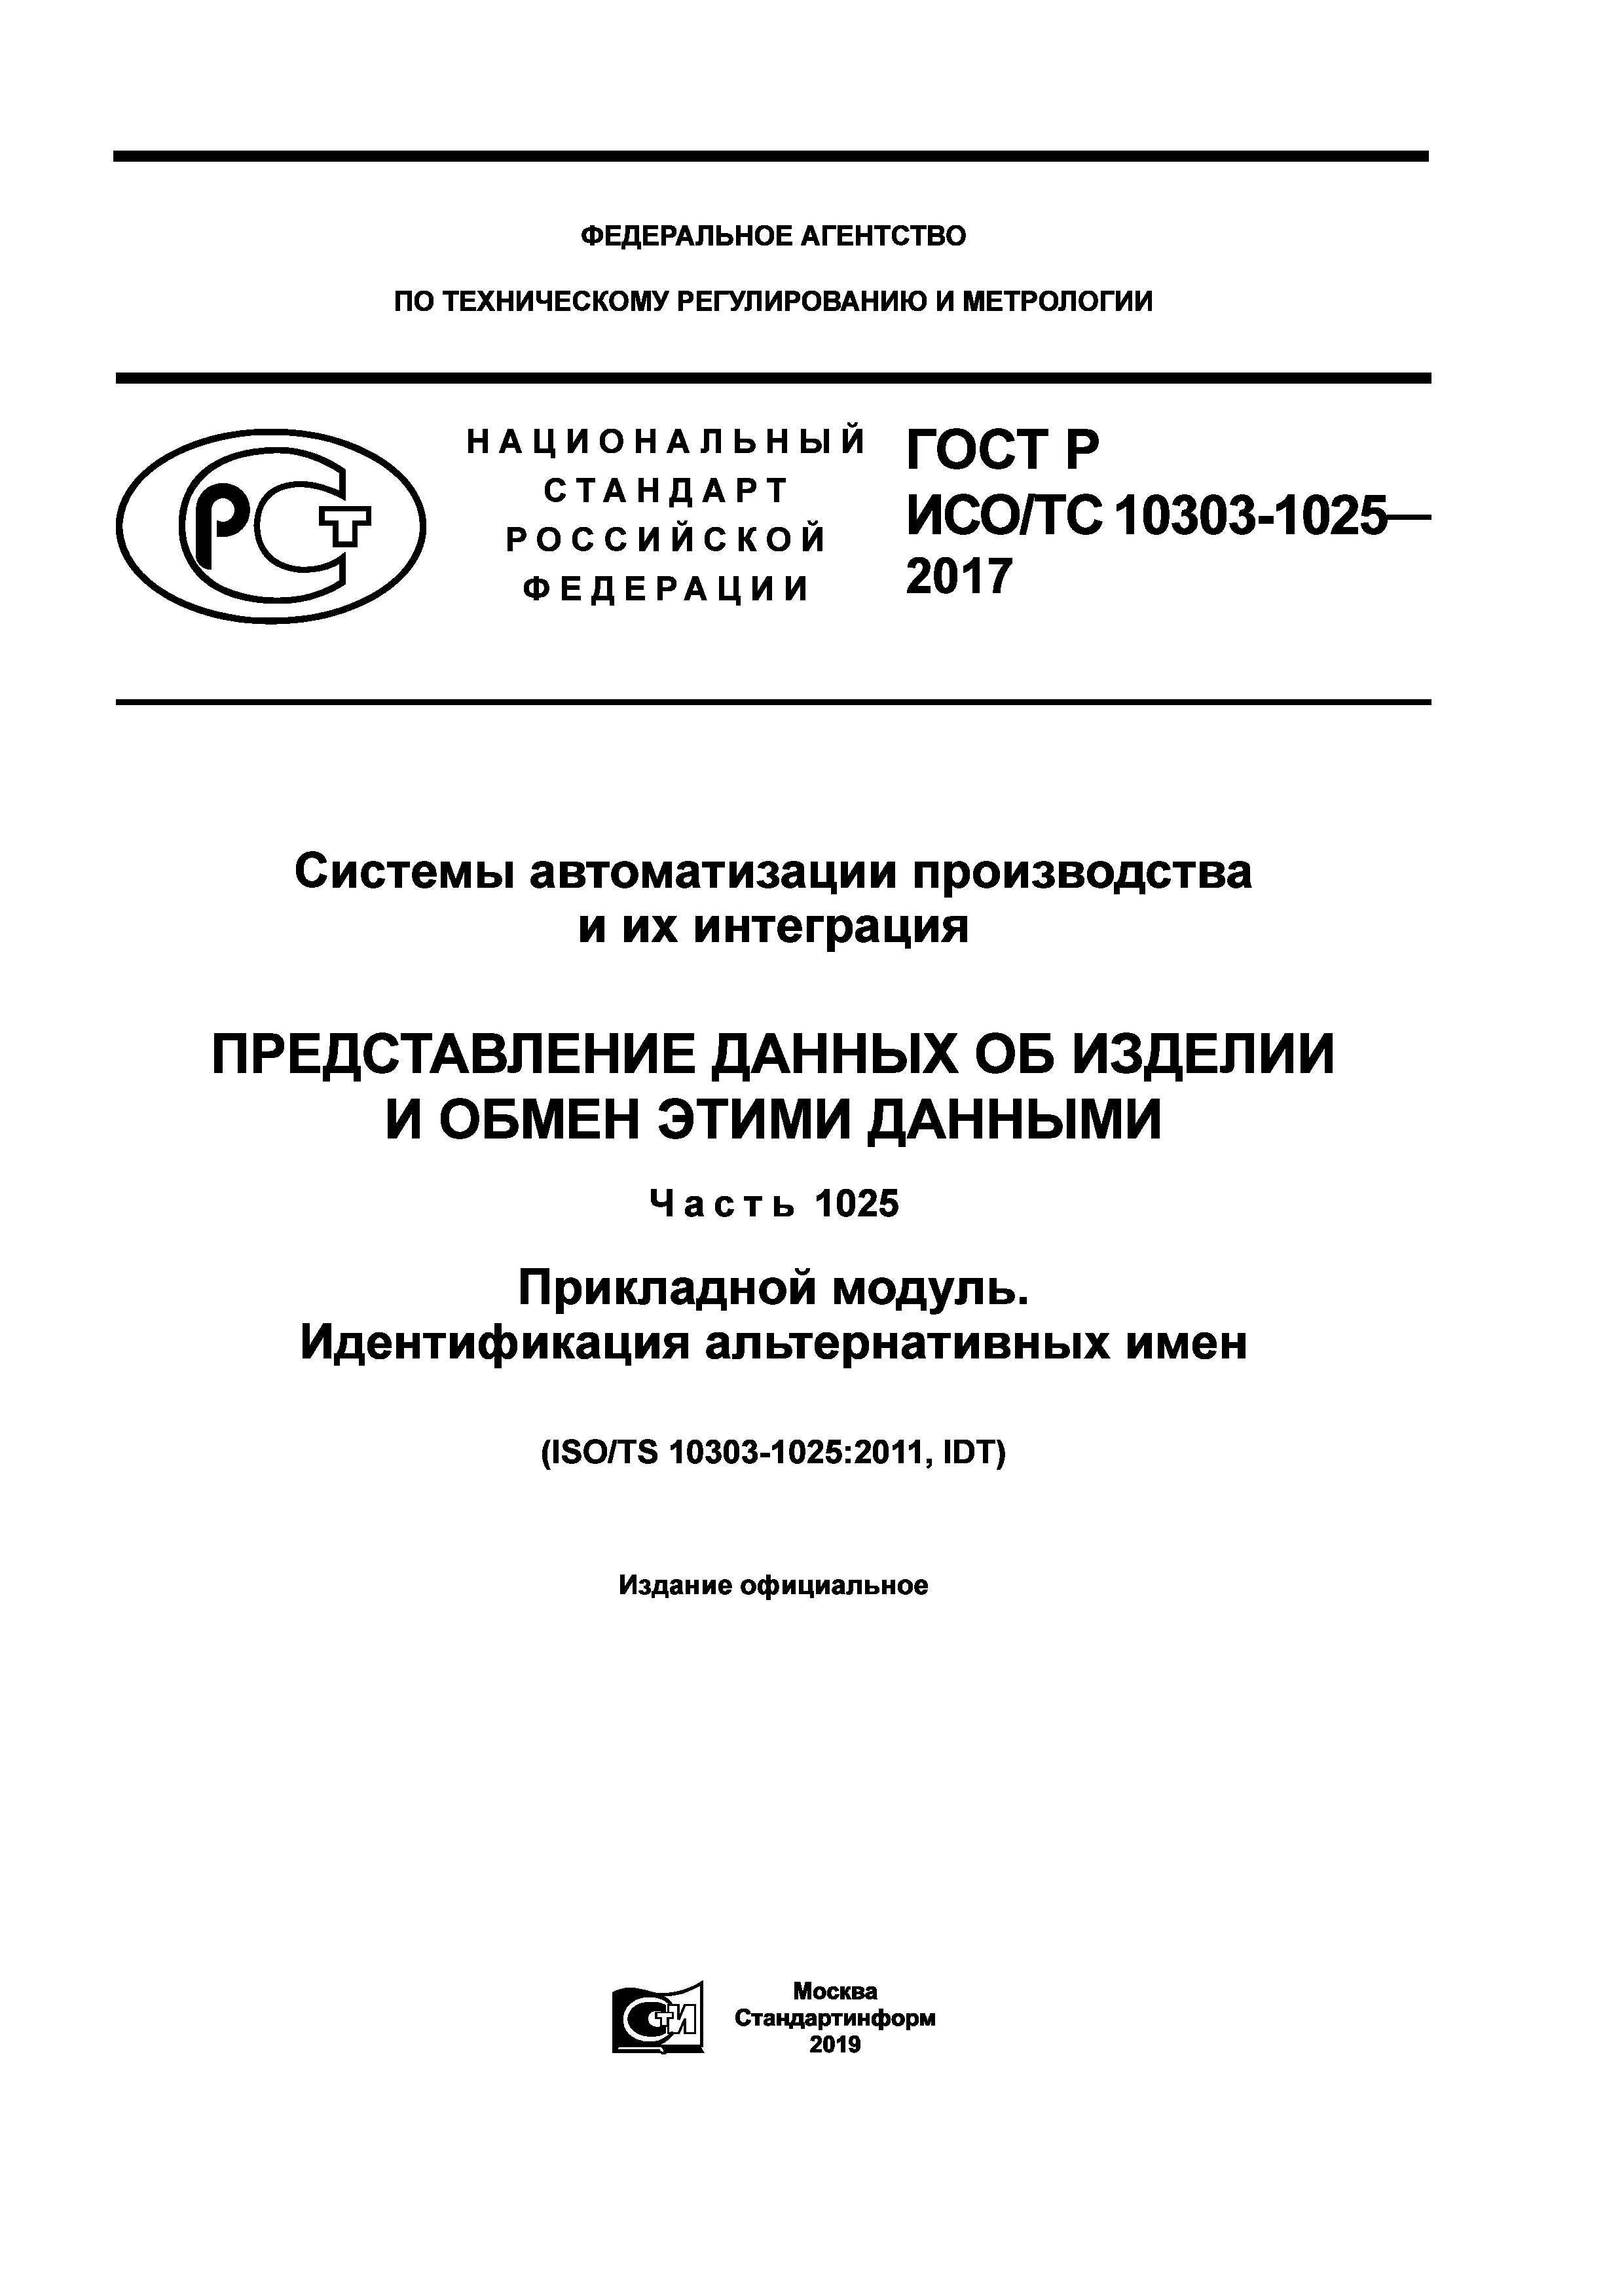 ГОСТ Р ИСО/ТС 10303-1025-2017